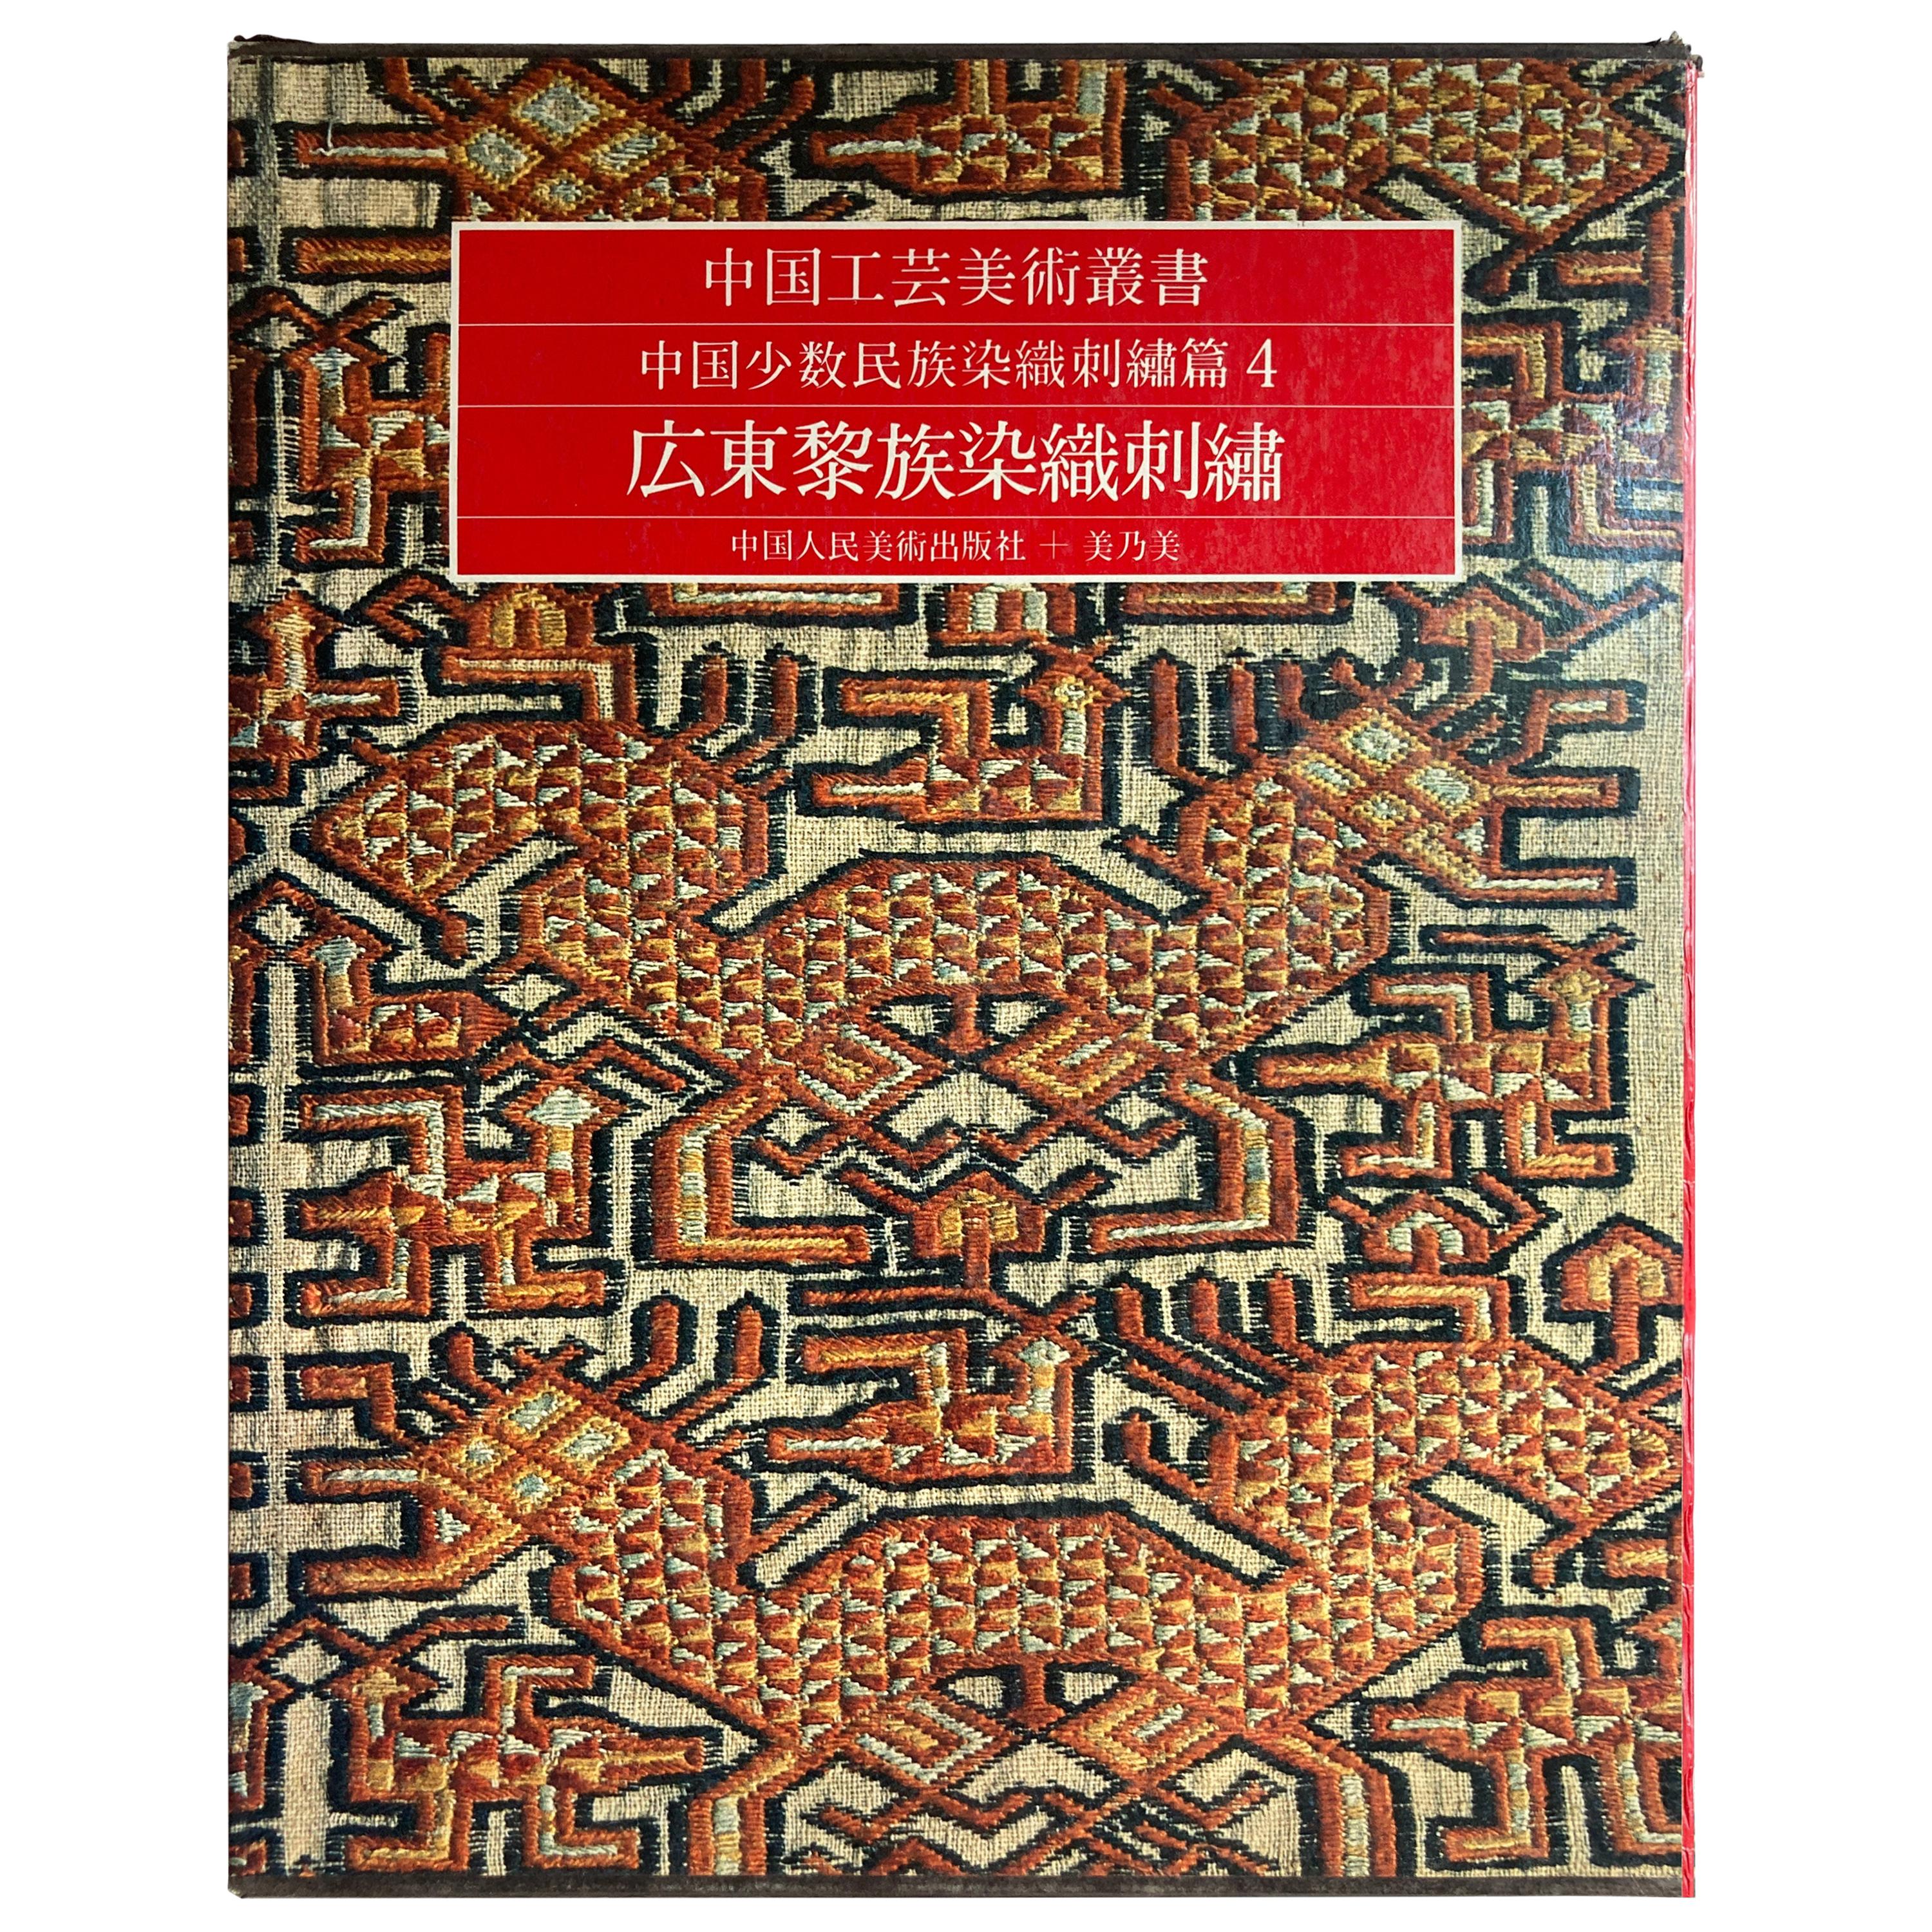 Chinesische antike Textilien und Stickerei-Ausgabe in chinesischer Sprache